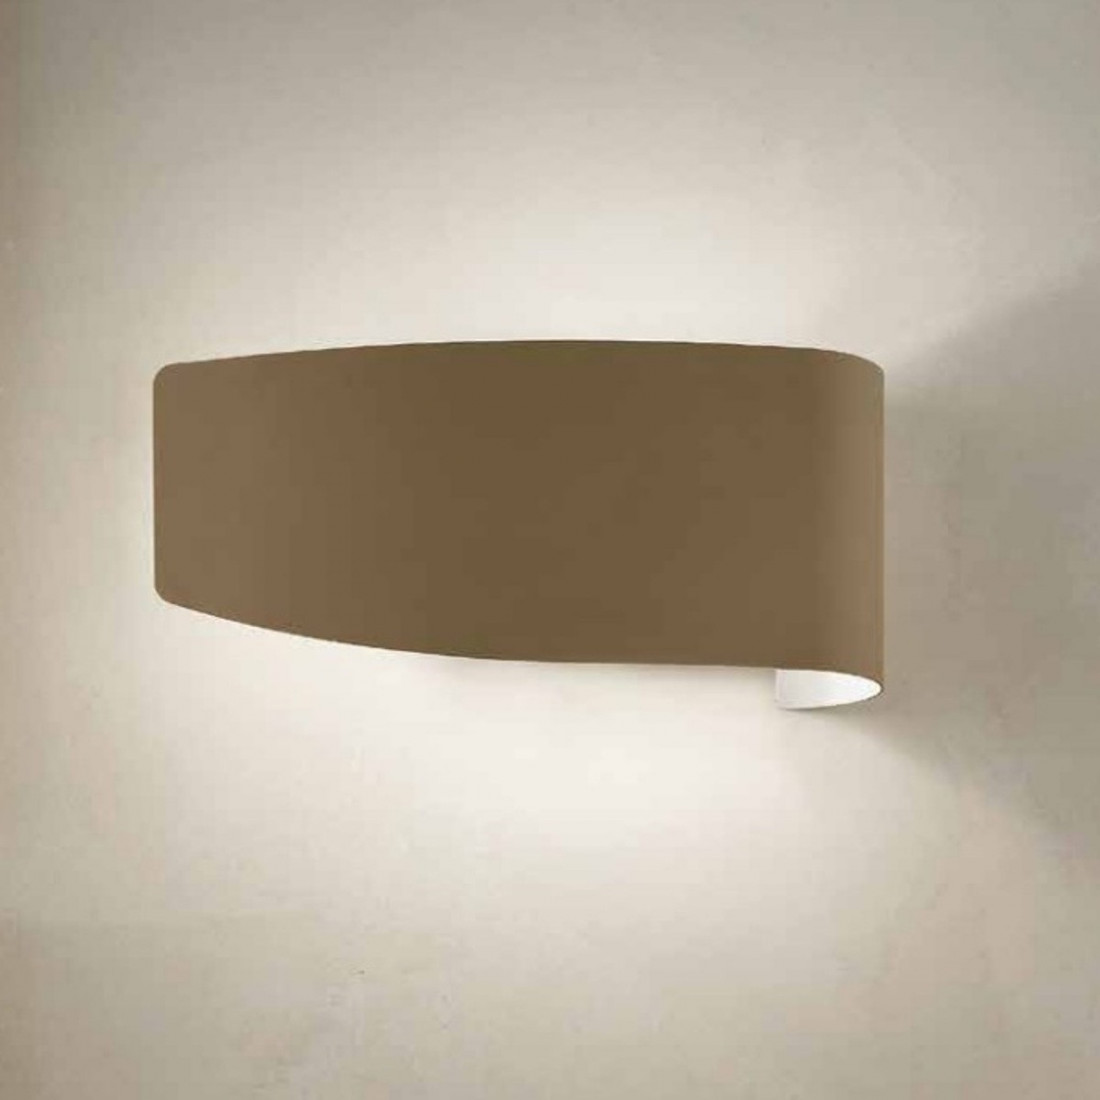 Applique FB-VIRGOLA 582 A E27 LED metallo colorato biemissione lampada parete moderna interno